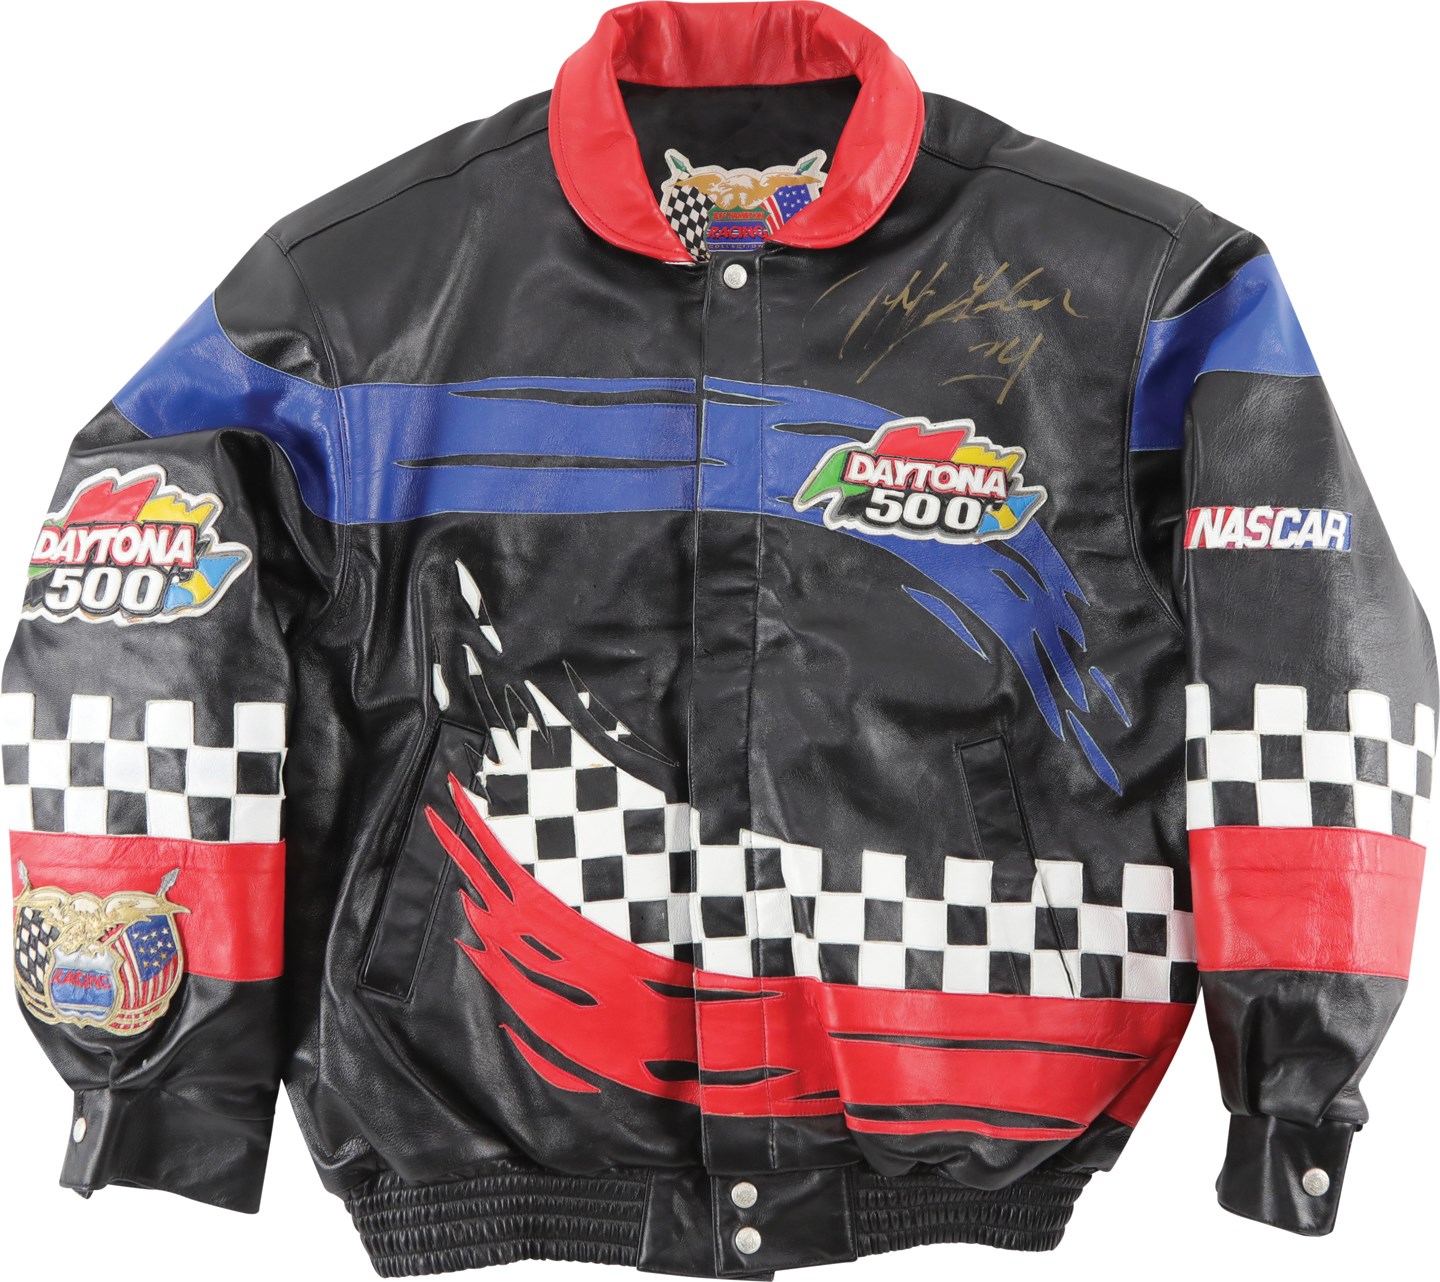 - Jeff Gordon Signed Daytona 500 Jacket by Jeff Hamilton